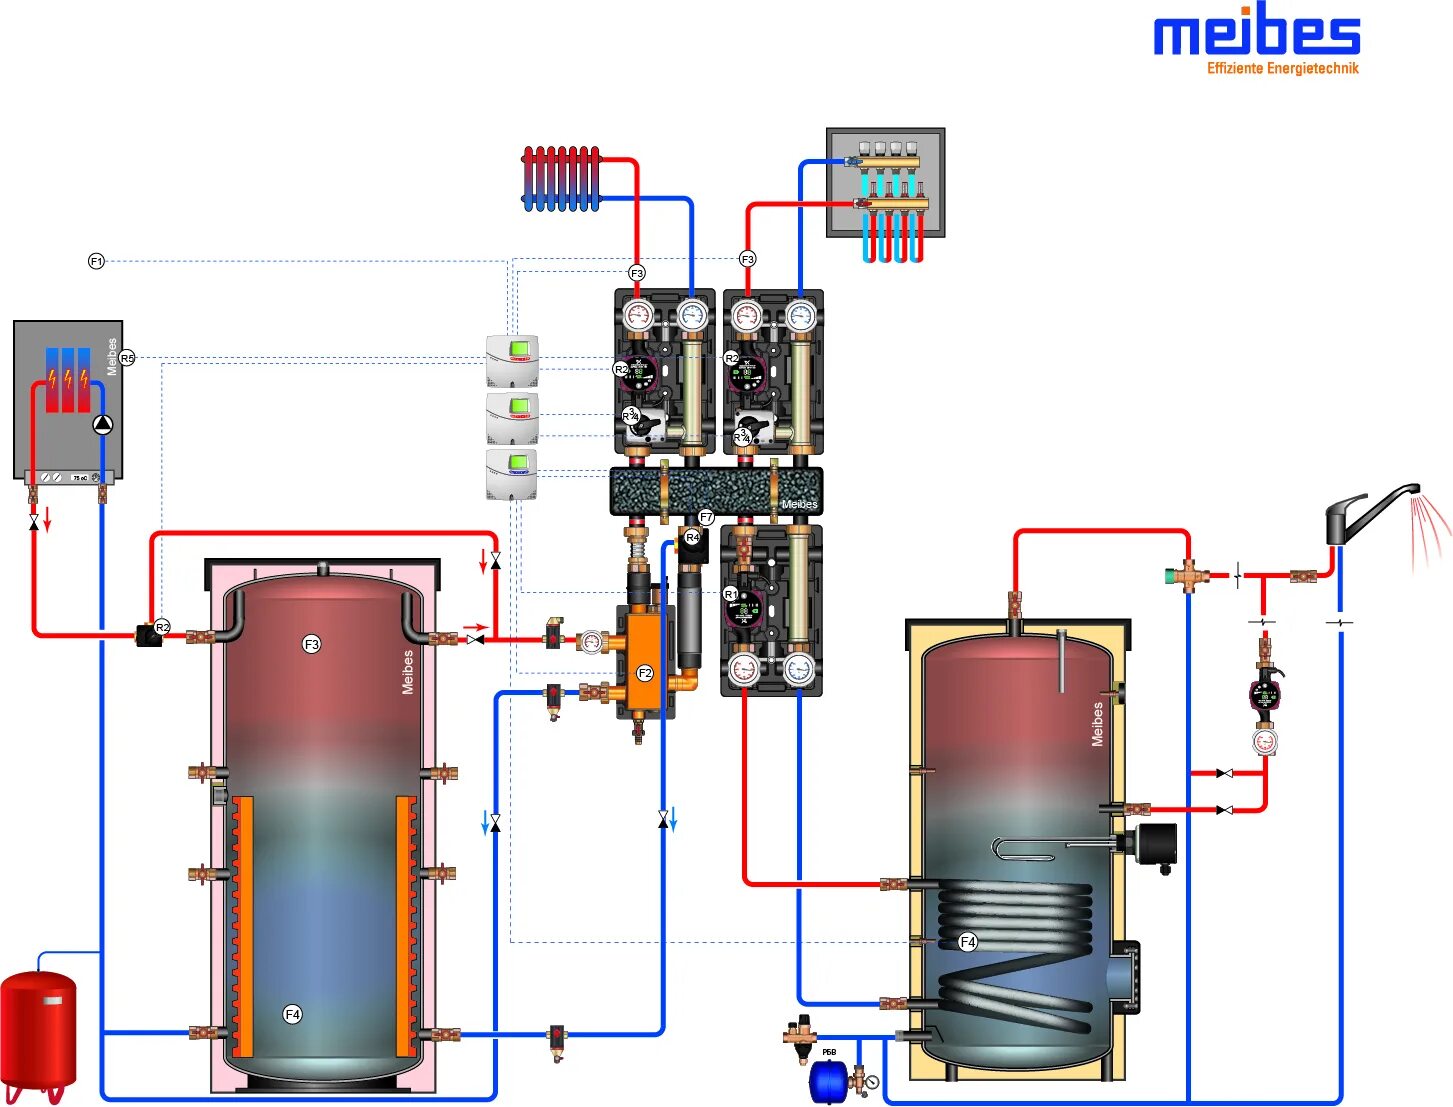 Котлы отопления косвенного нагрева. Схема котельной Майбес. Теплоаккумулятор для отопления Майбес. Обвязка твердотопливного котла с теплоаккумулятором. Meibes обвязка котельной.